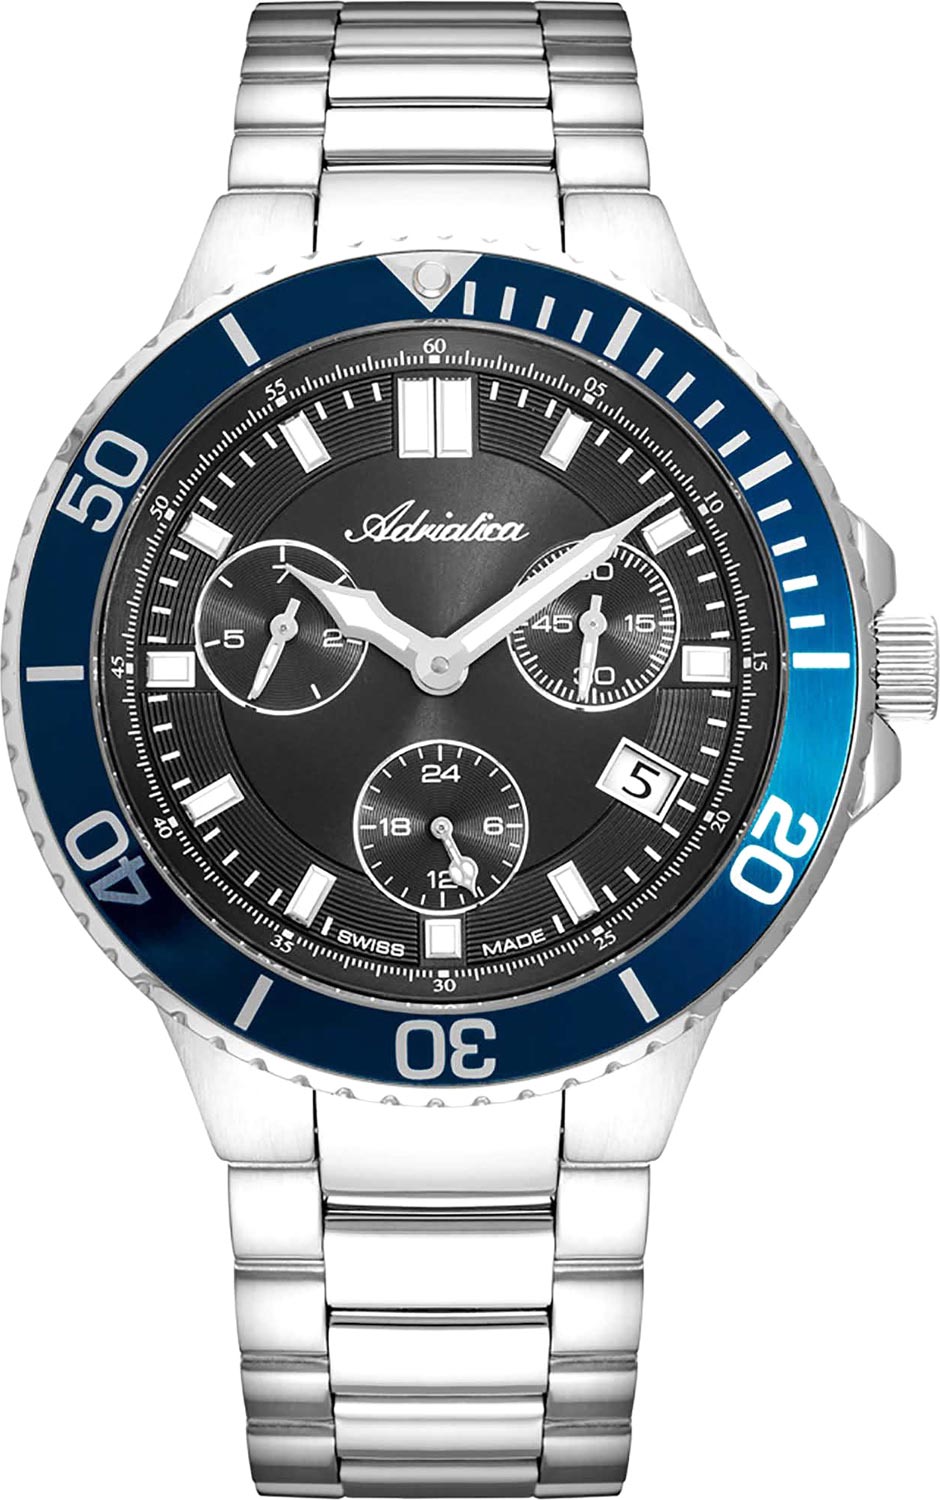 Швейцарские наручные часы Adriatica A8317.5116QF с хронографом